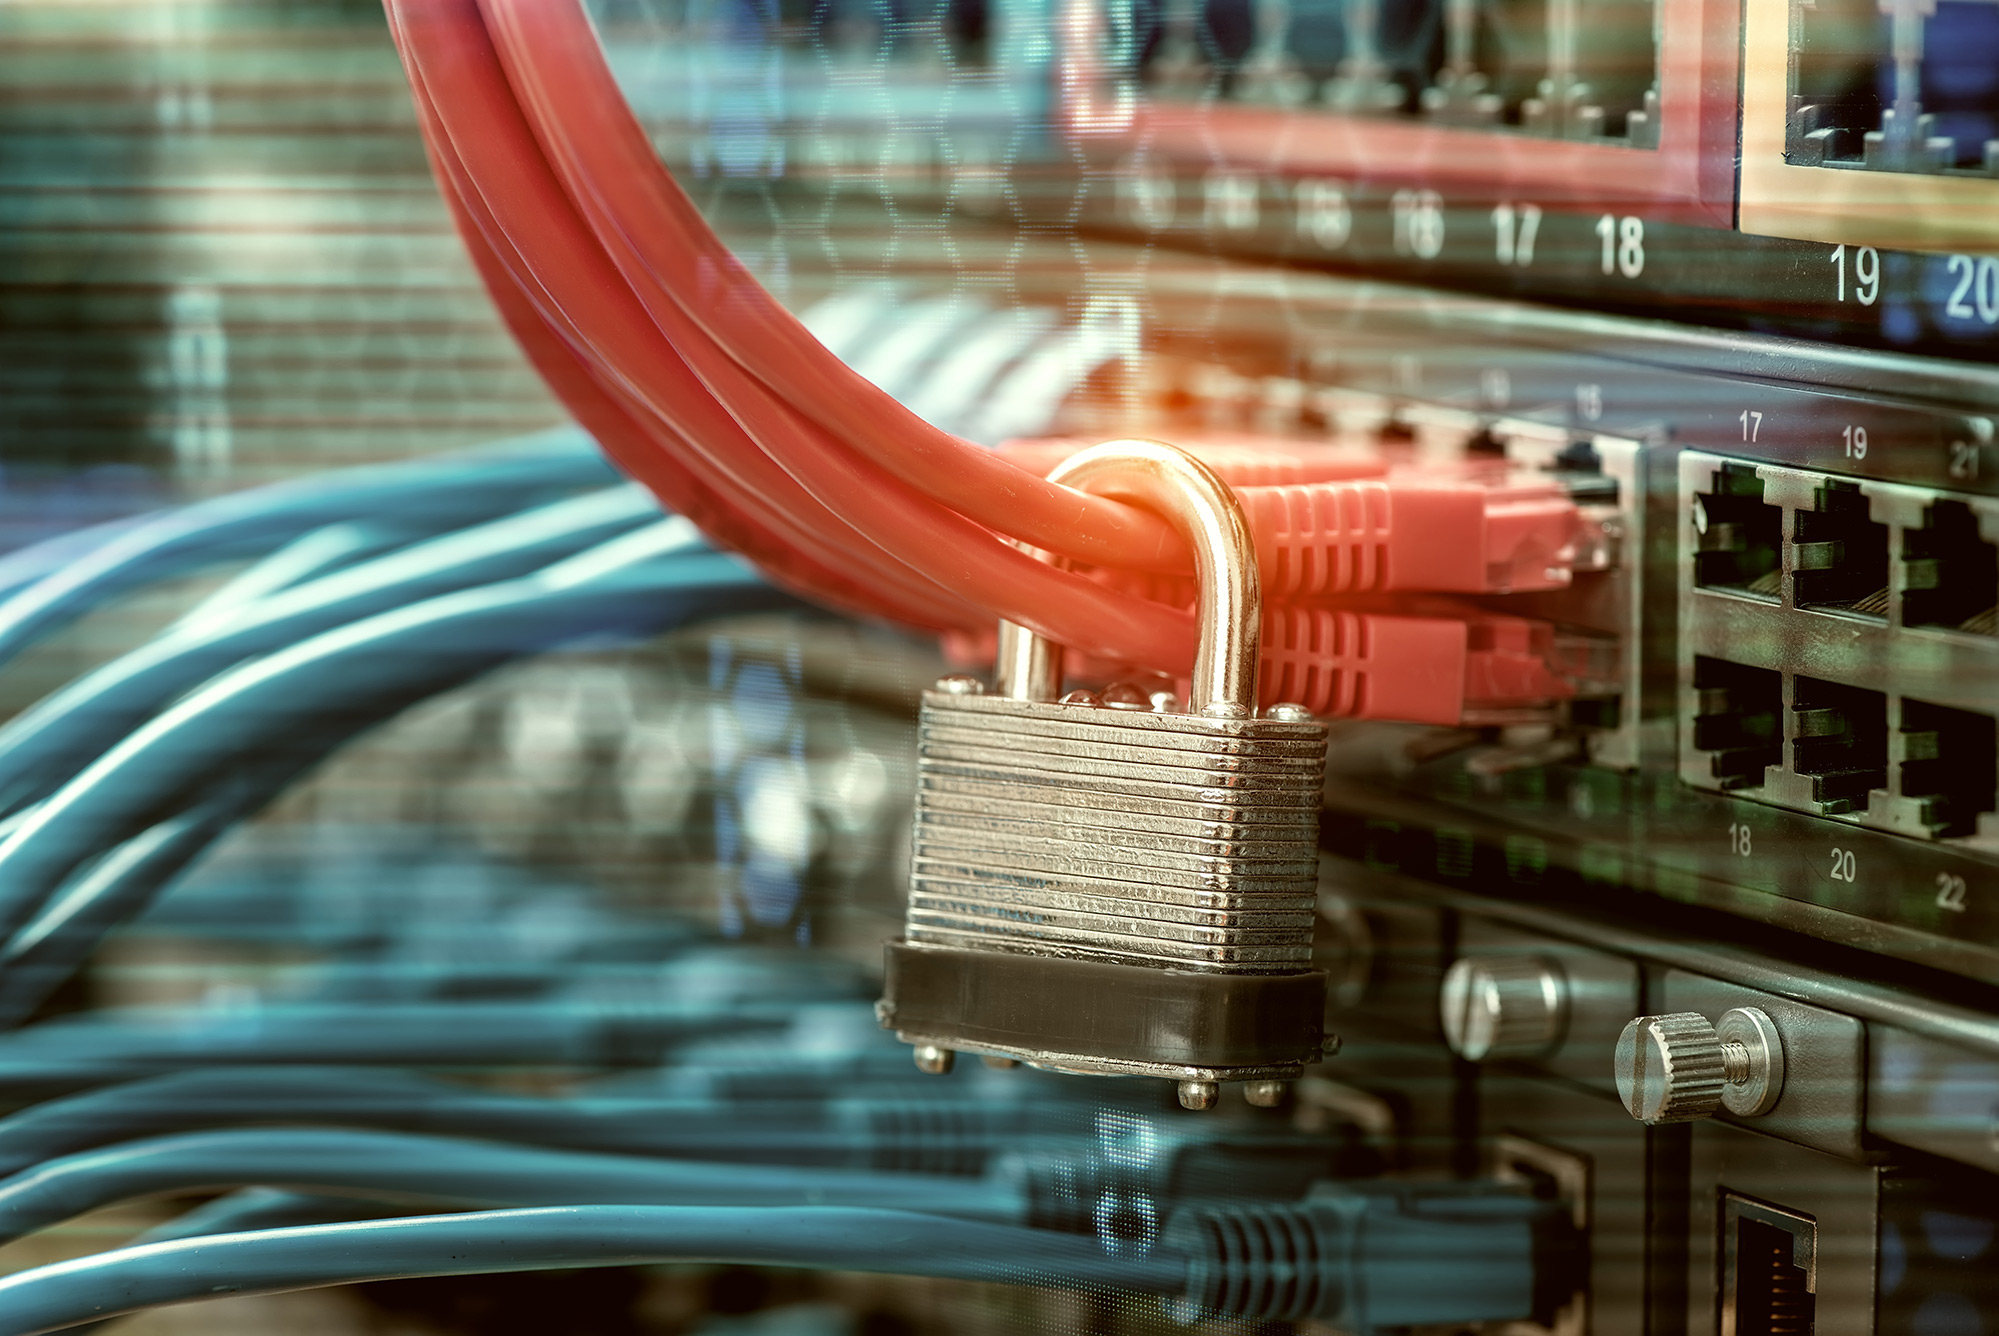 Das Bild zeigt die Nahaufnahme eines Servers. An den Kabeln hängt ein Vorhängeschloss, welches die Datensicherheit symbolisiert.